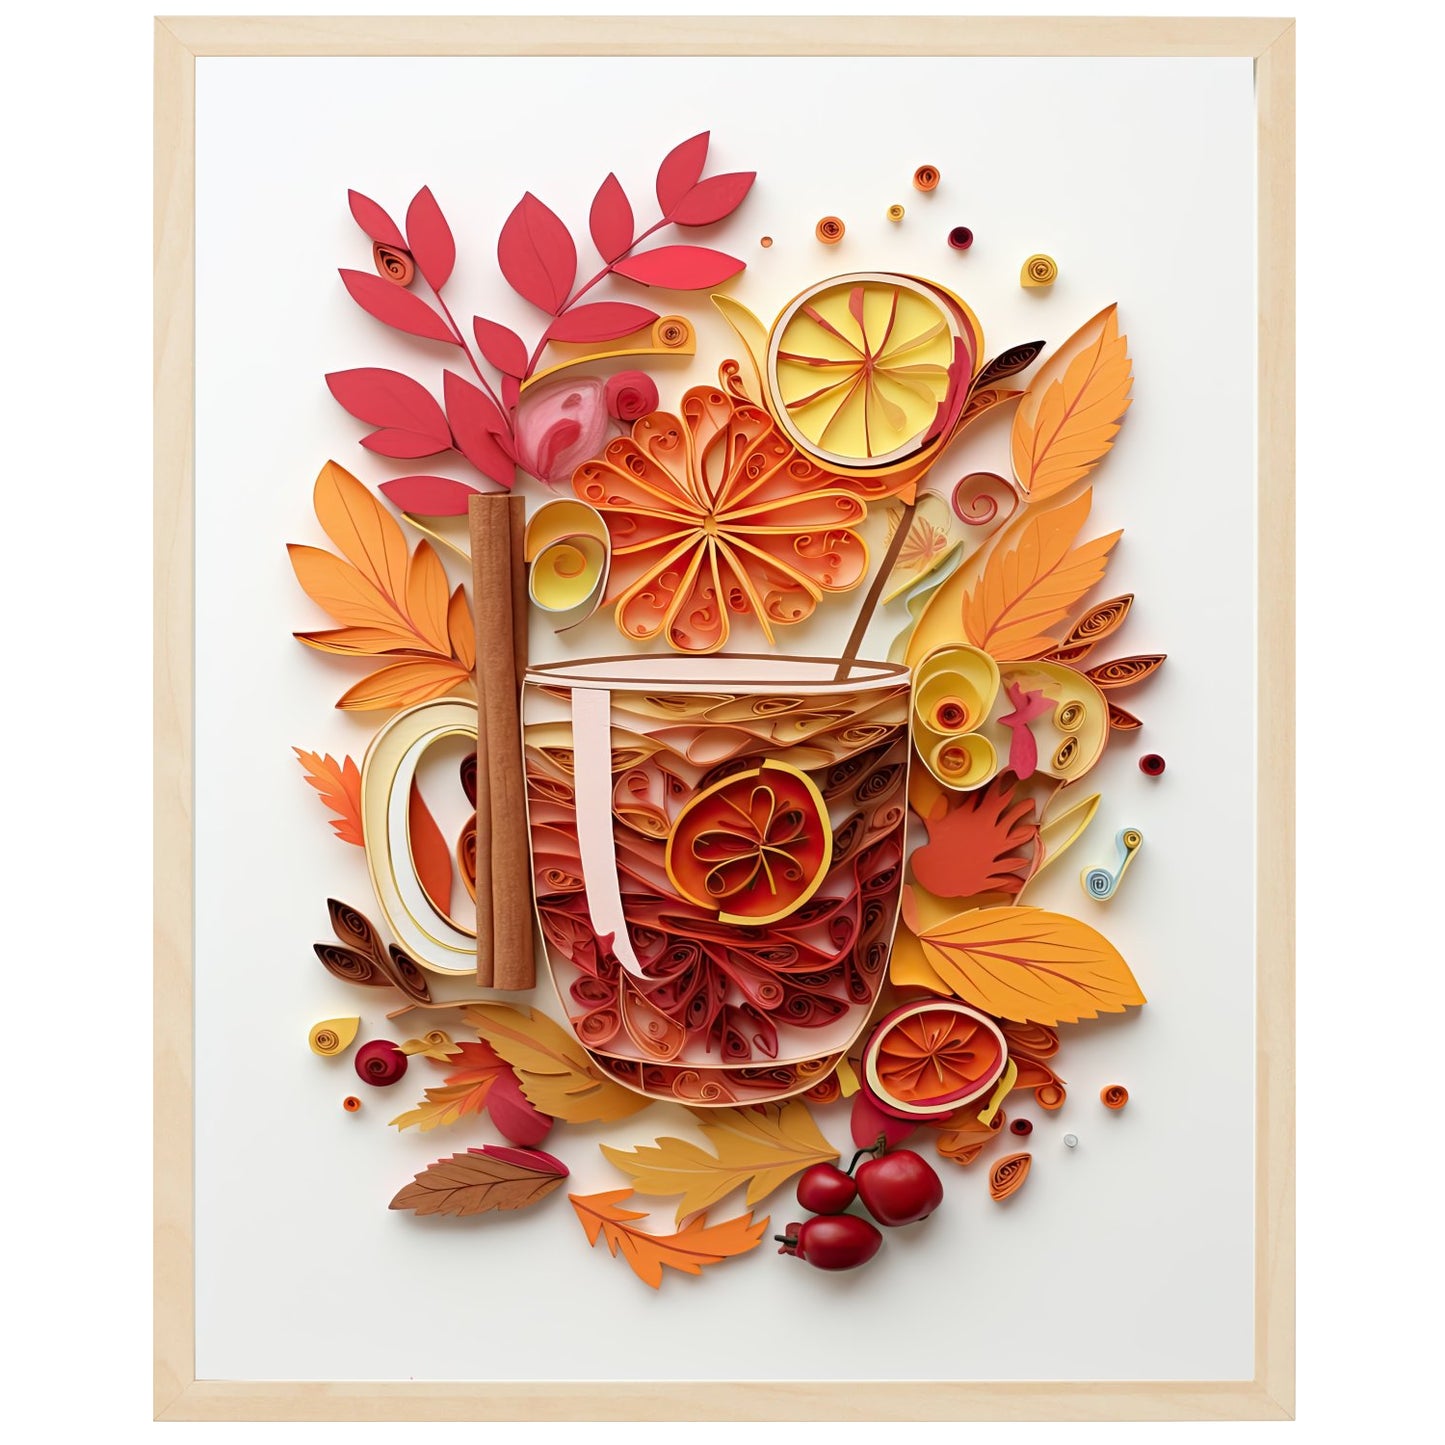 Et billede af en hyggelig kop varm æblesaft med kanel og nelliker, der skaber en varm og hjemlig atmosfære. Perfekt til efteråret eller vinteren.